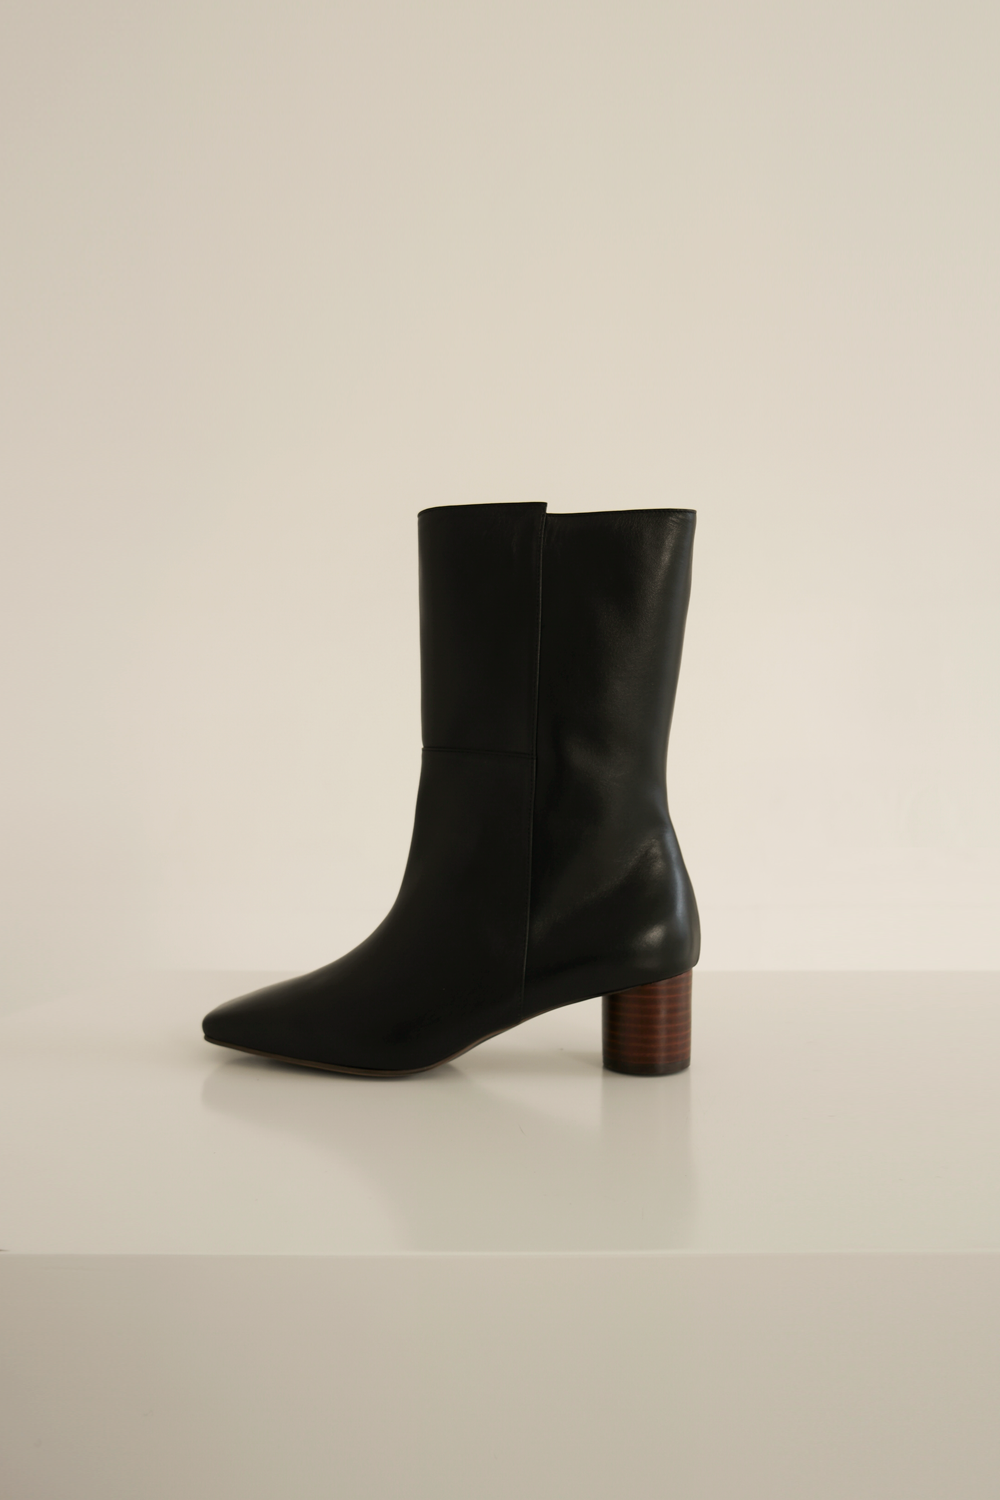 ANTHÈSE ruben short boots, black